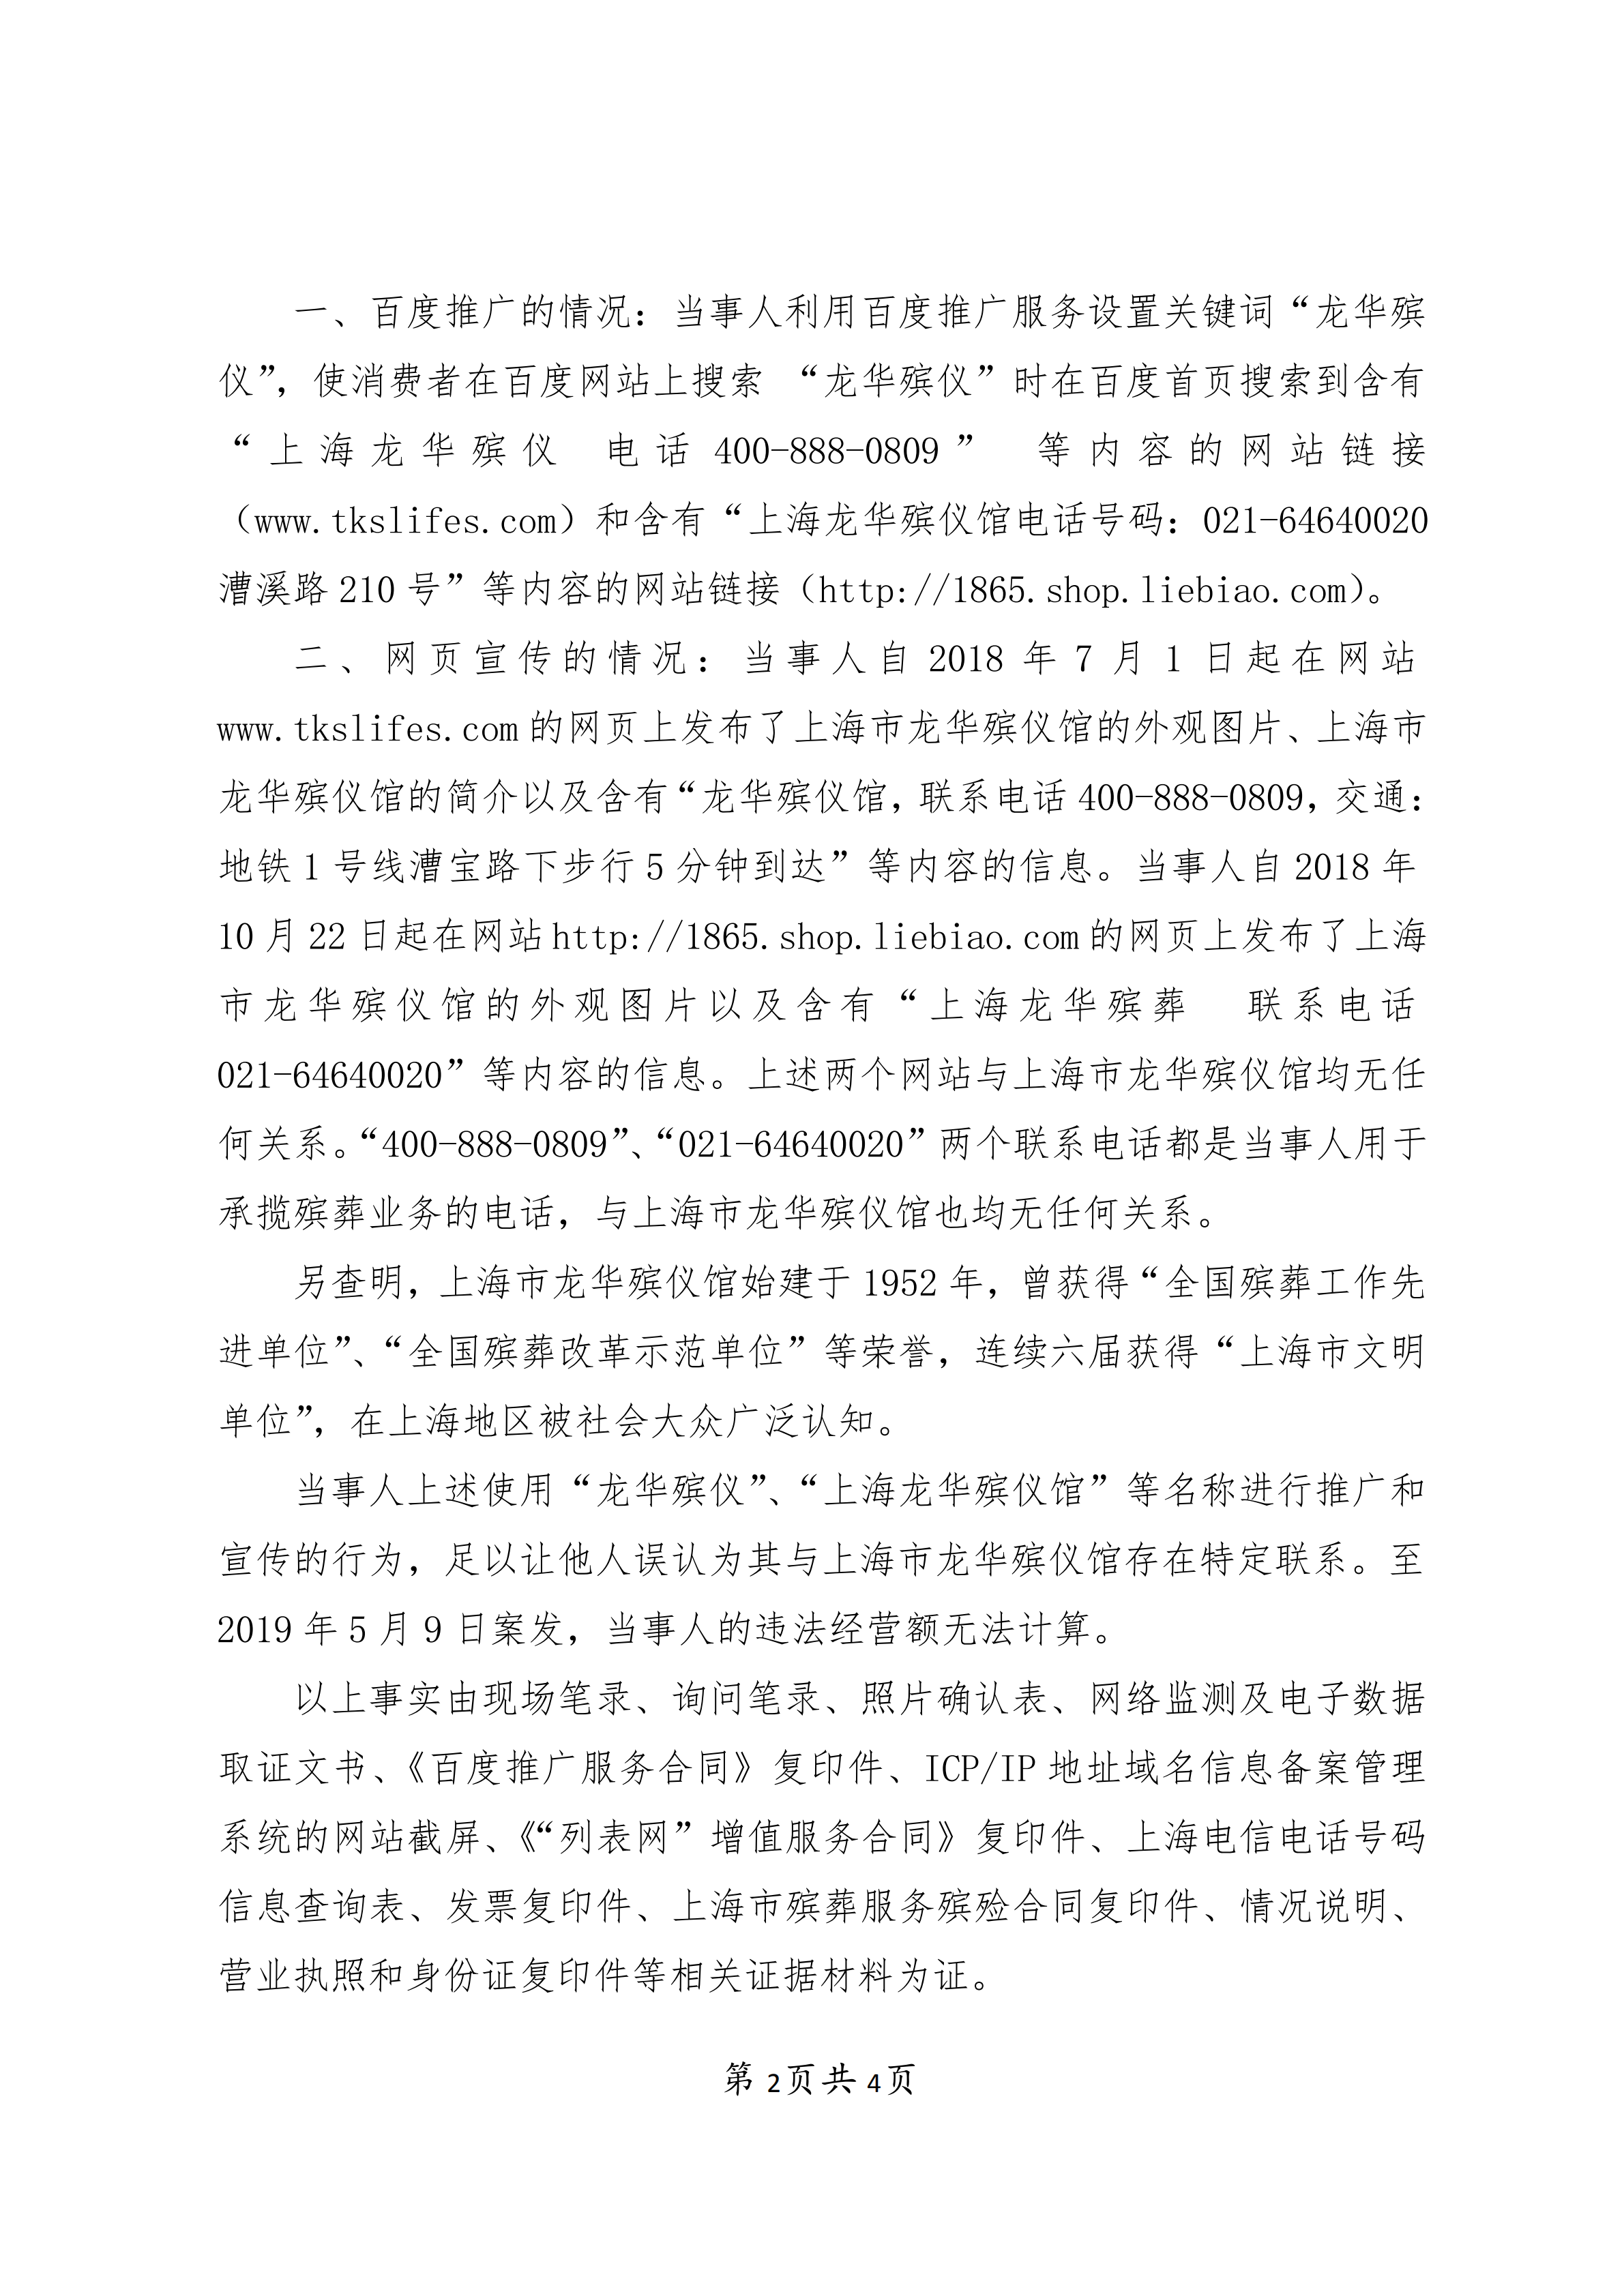 上海梦生殡葬用品销售有限公司不正当竞争案-行政处罚书(1)_01.png